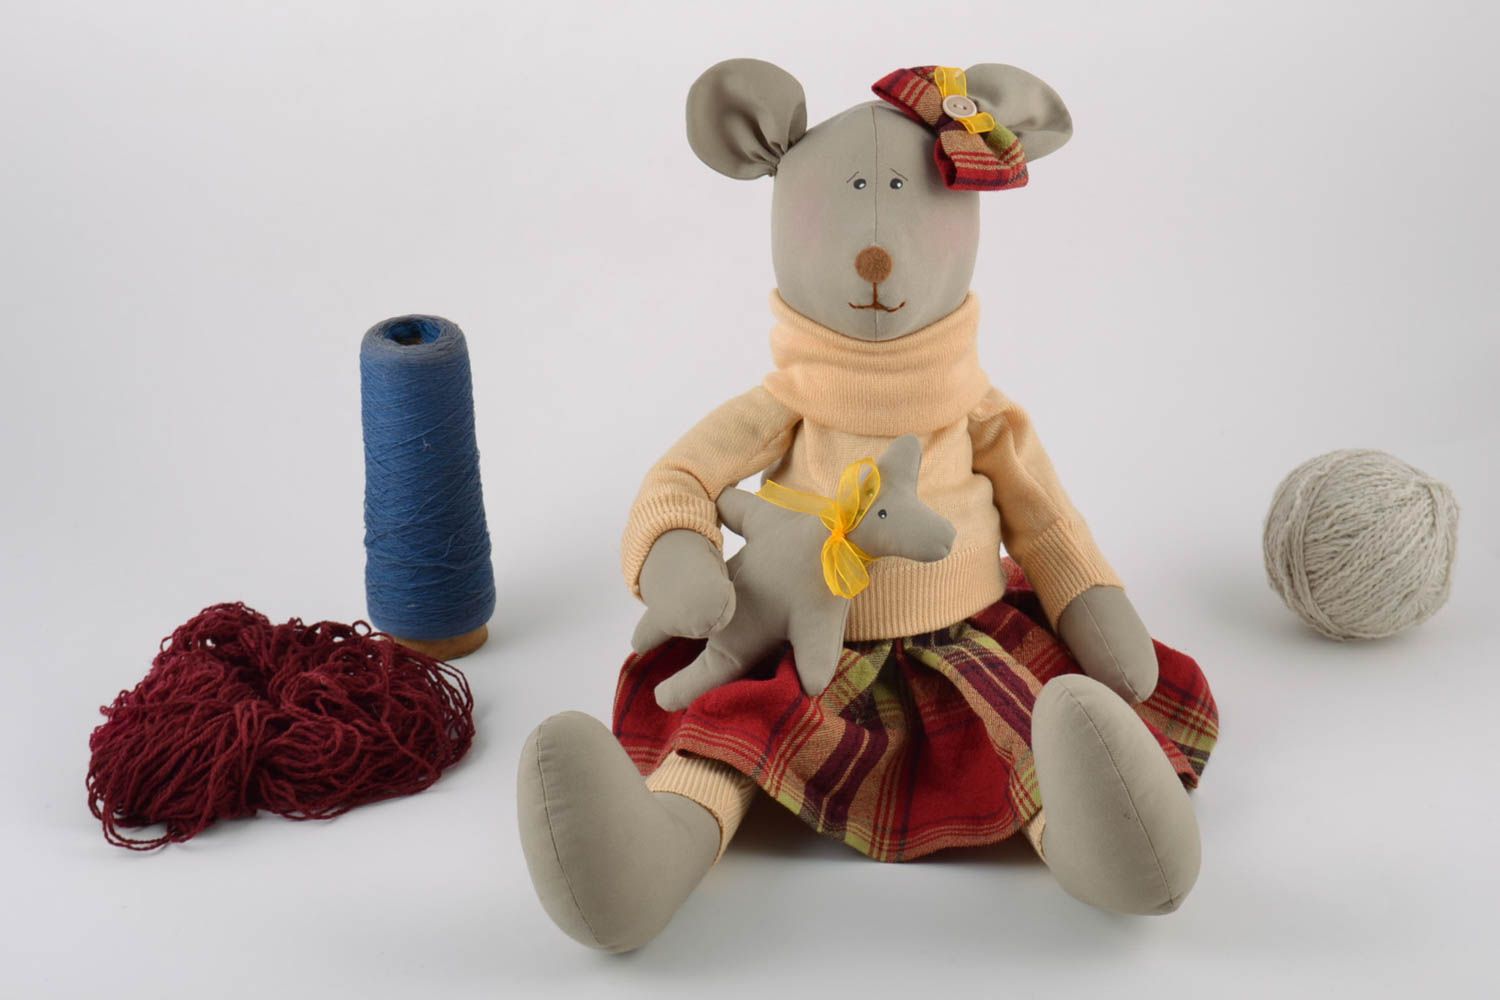 Textil Kuscheltier Maus im Rock aus Leinen Spielzeug für Kinder  foto 1